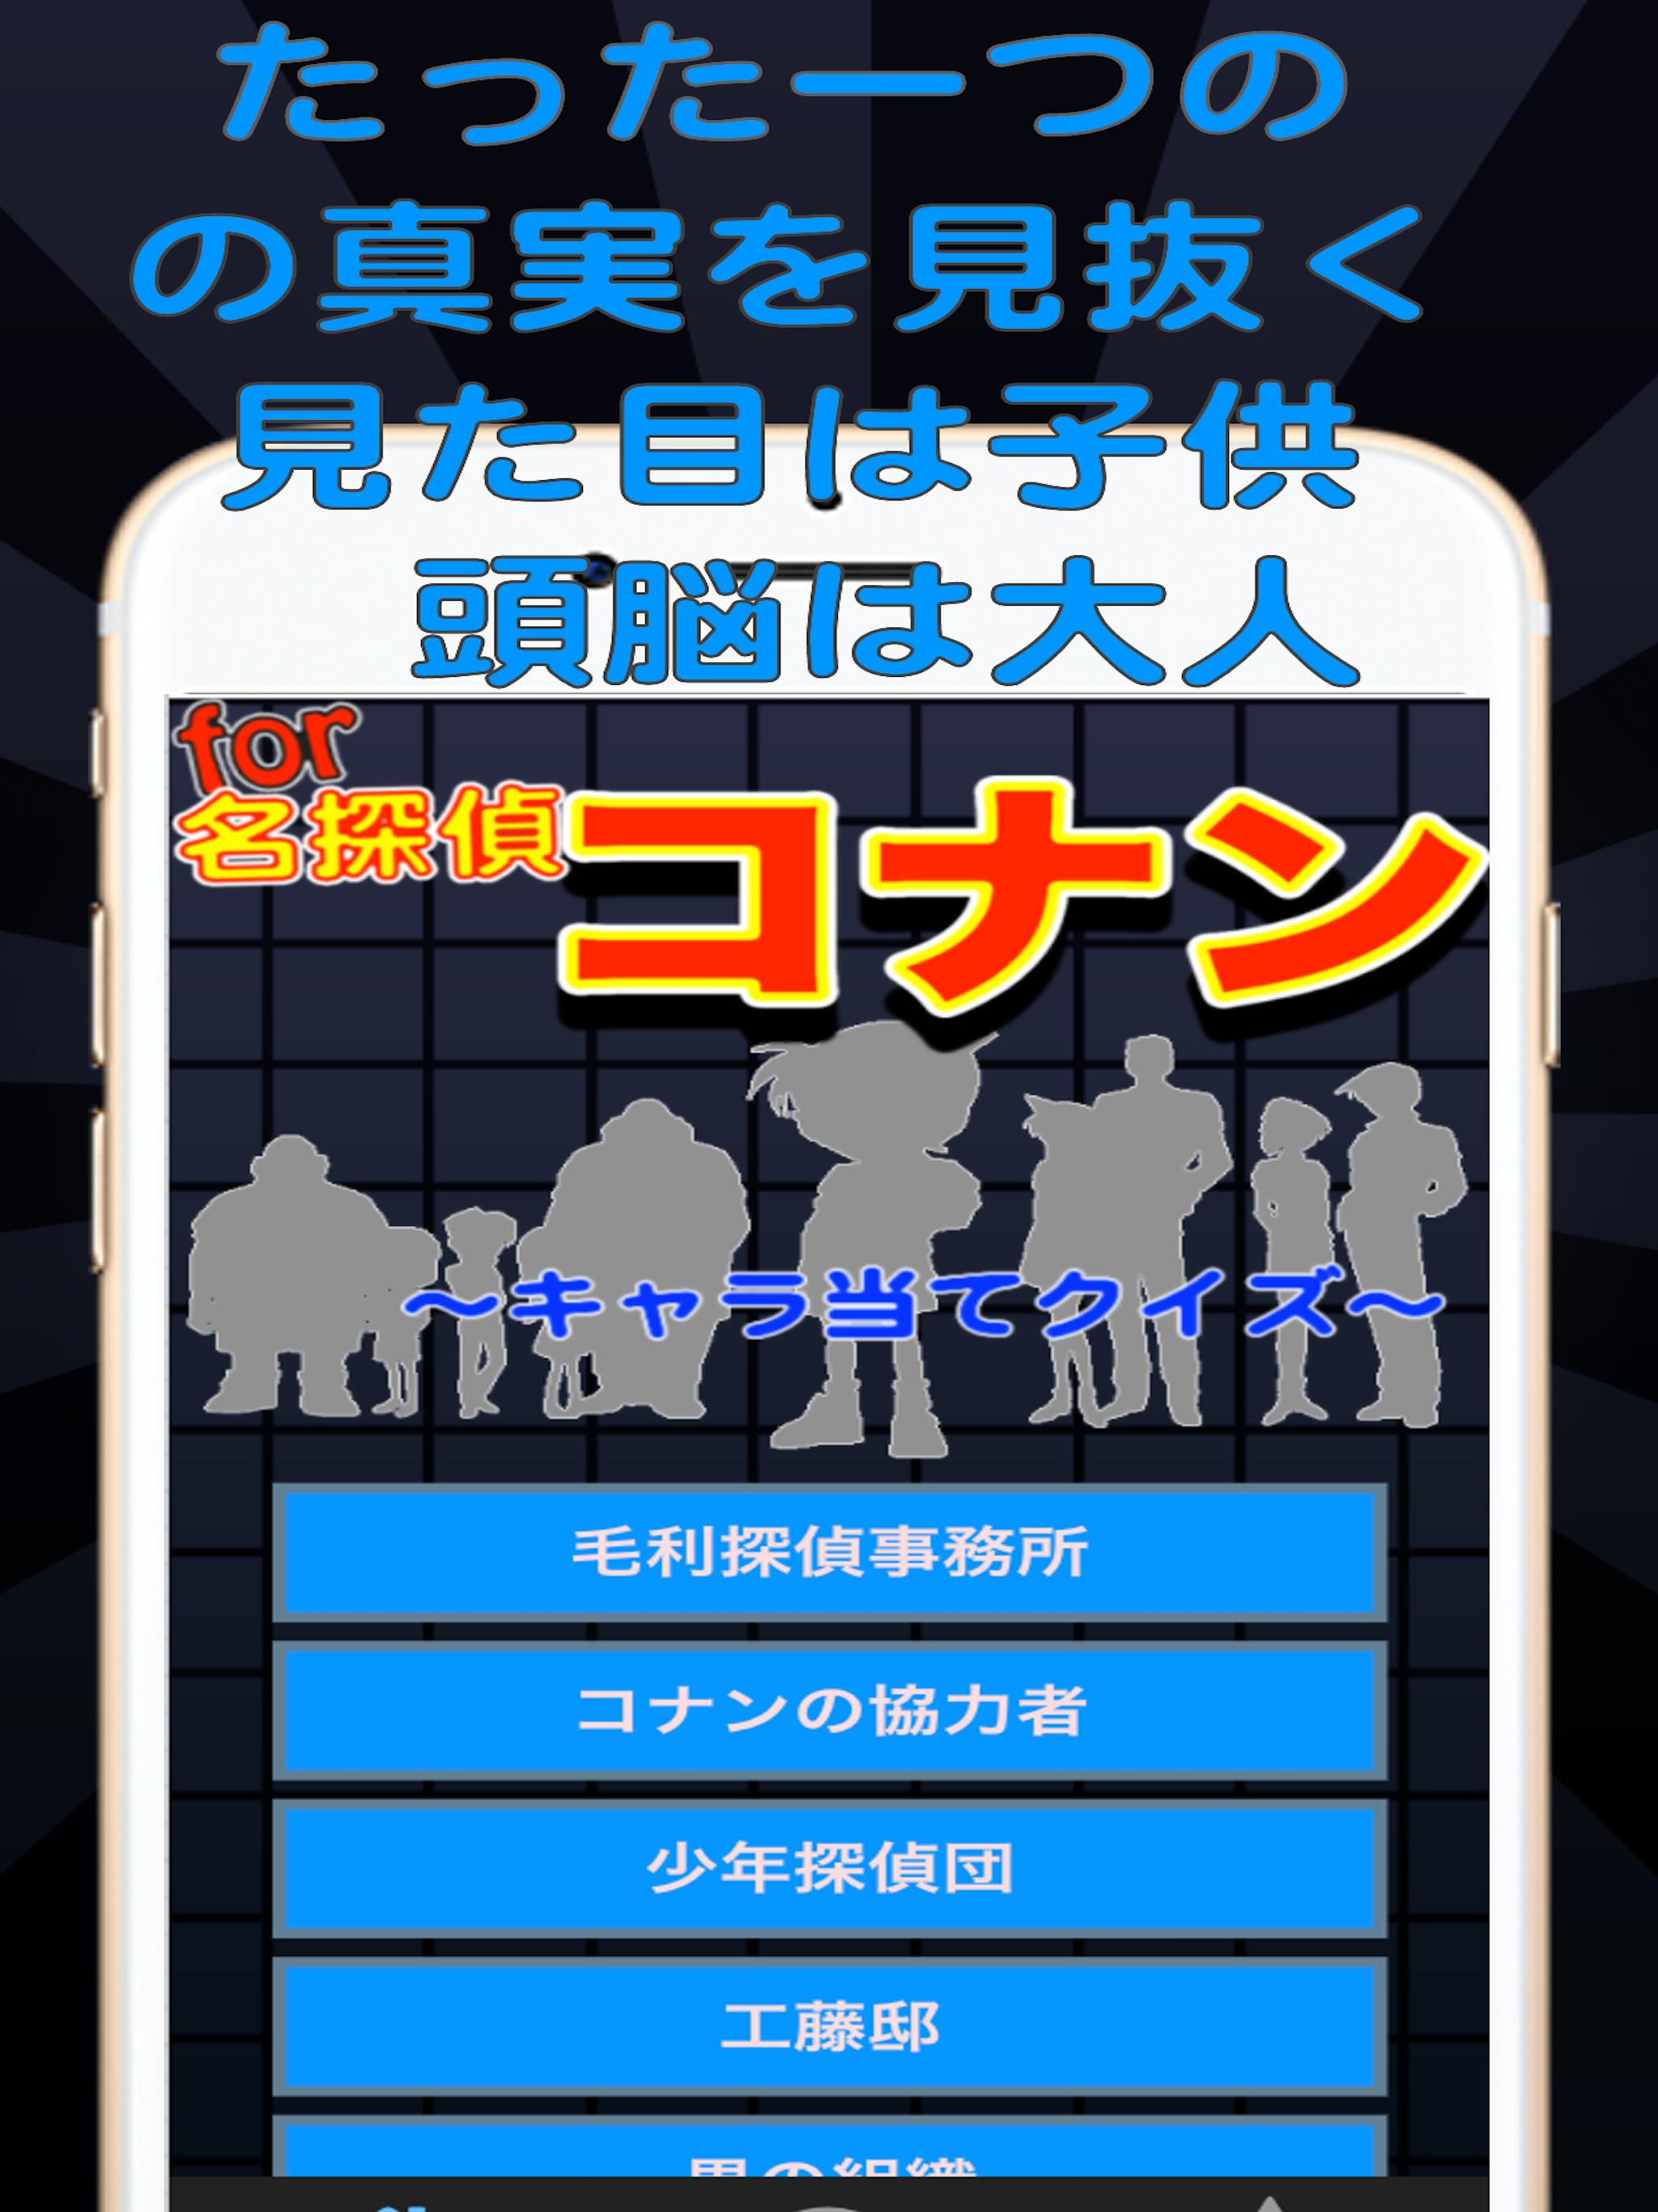 推理 For 名探偵コナン 探偵 犯人キャラクター推理ゲーム For Android Apk Download